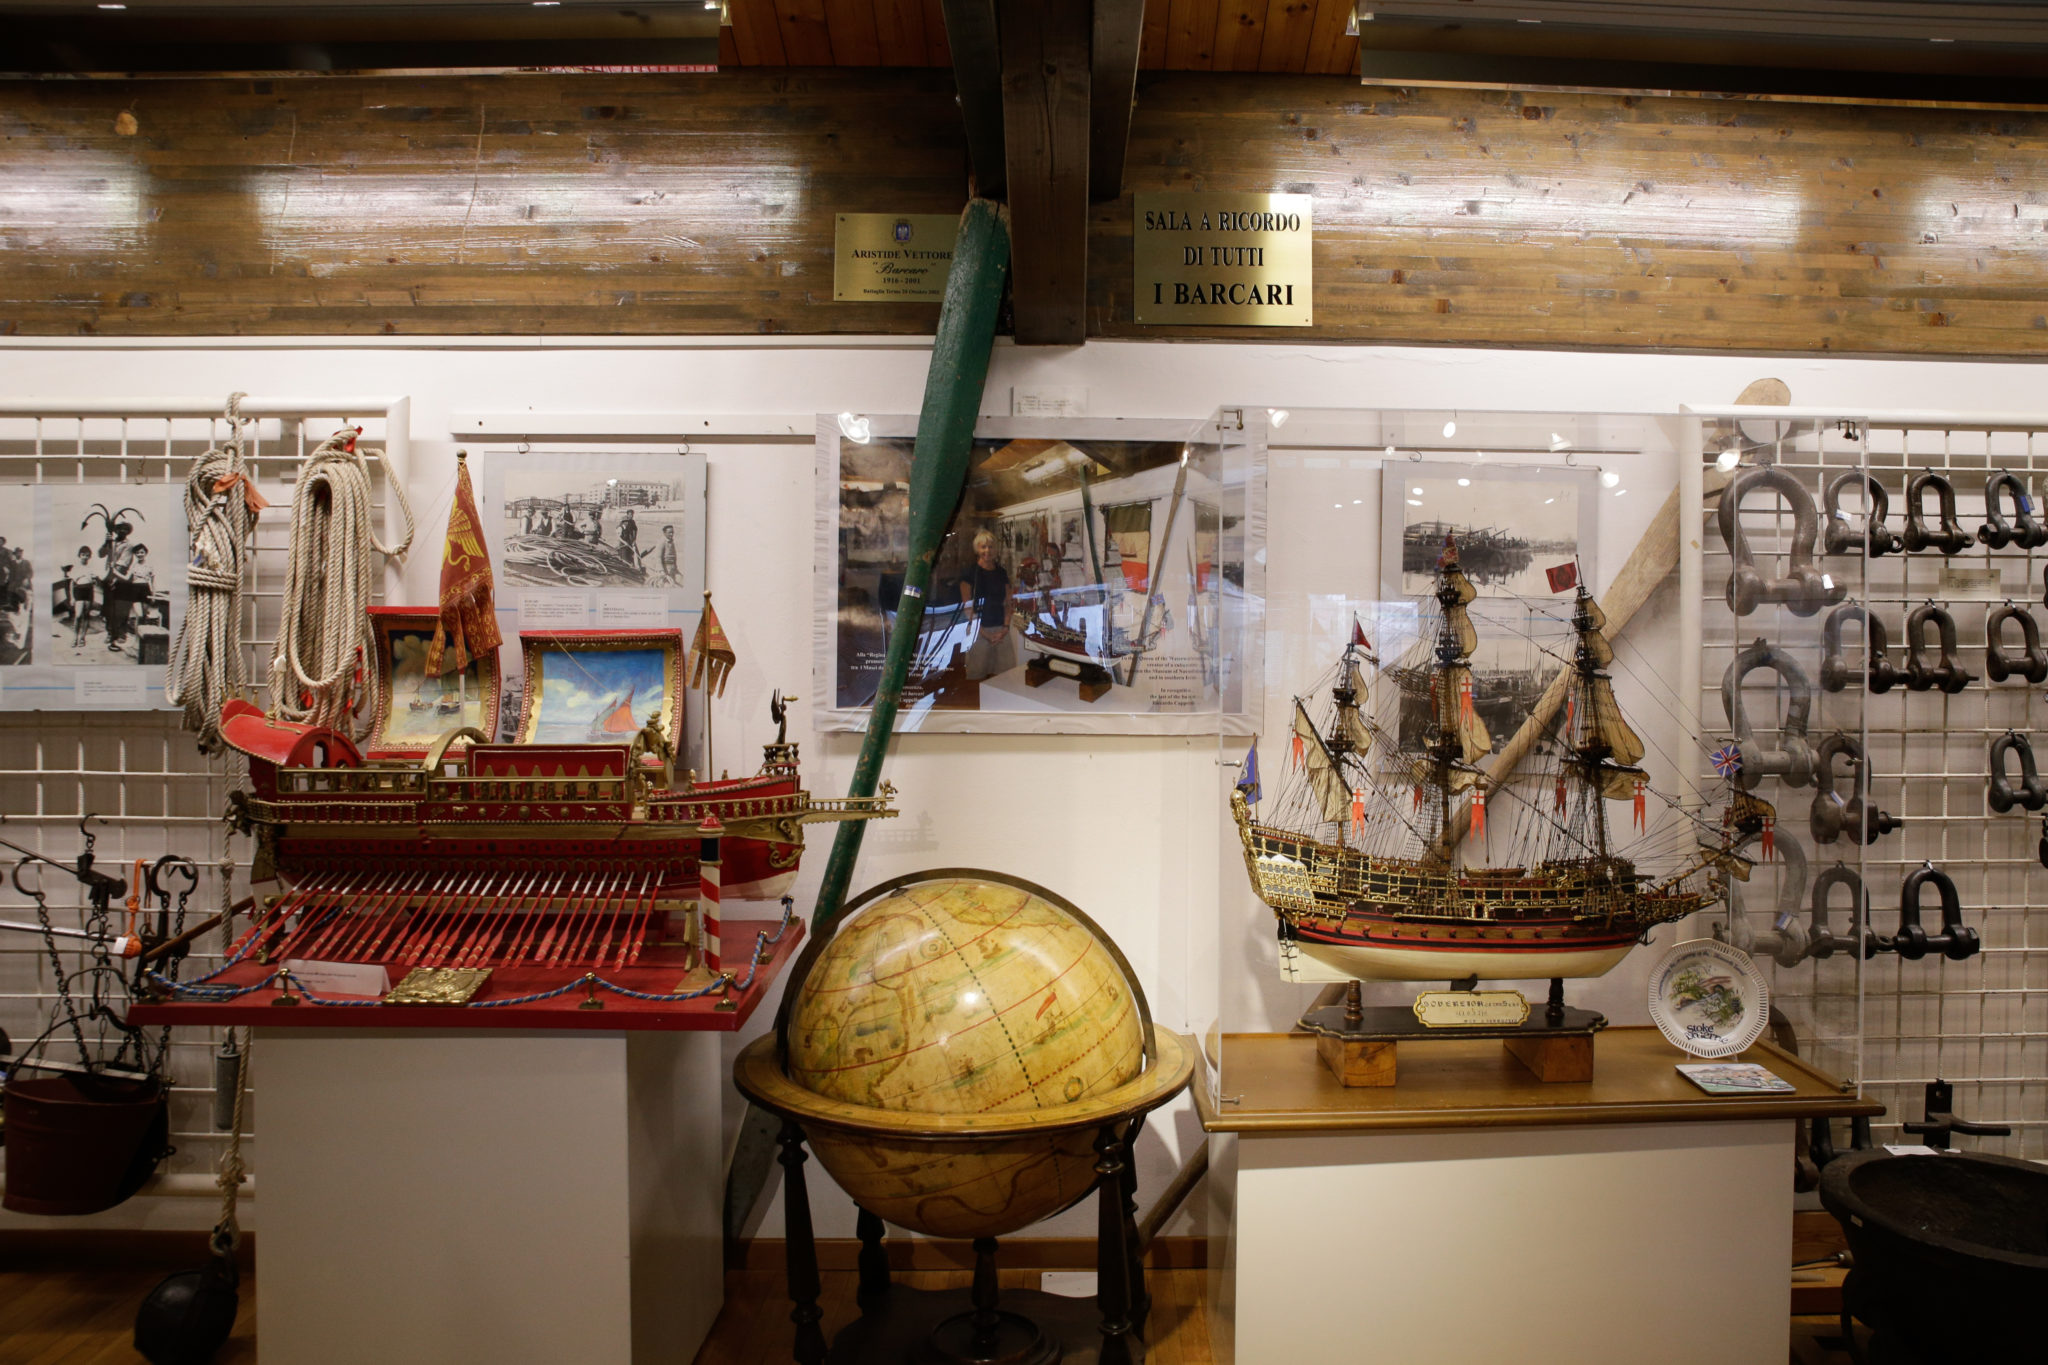 Storie, ricordi e materiali di vita vissuta dagli antichi barcaioli. Al Museo della Navigazione Fluviale di Battaglia Terme, Padova, si naviga nella memoria